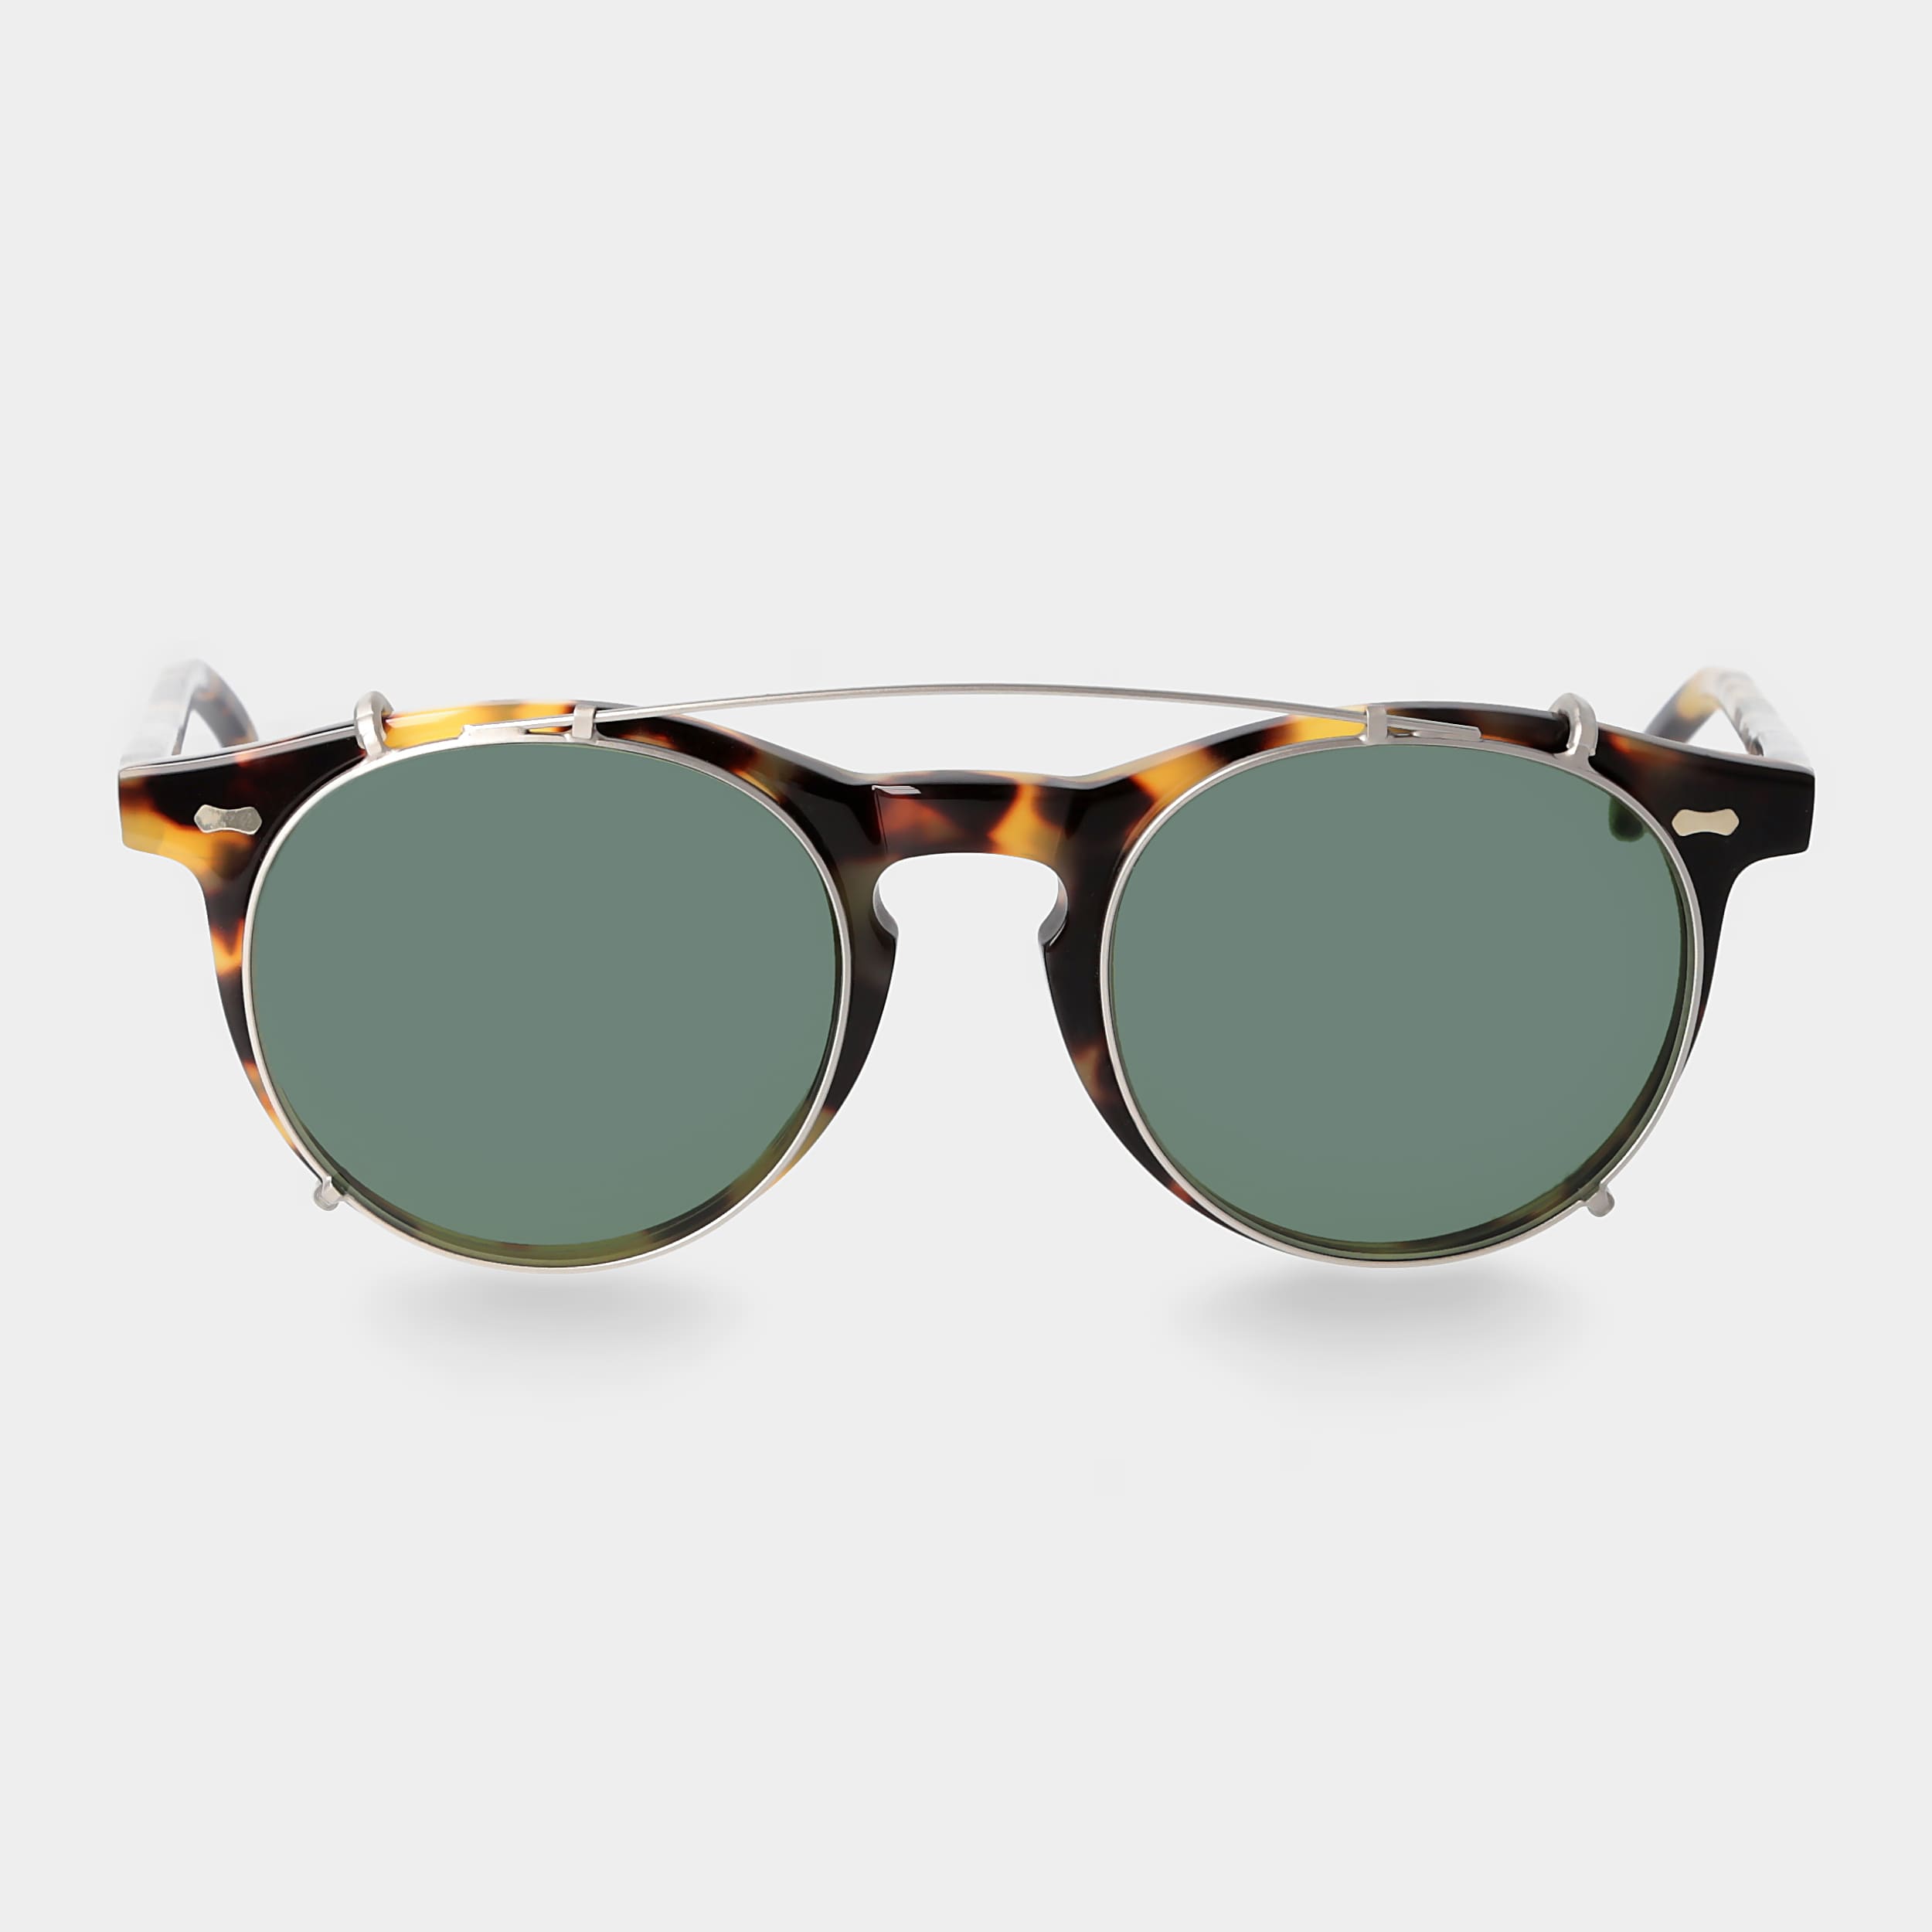 sunglasses-pleat-light-tortoise-silver-bottle-green-tbd-eyewear-front